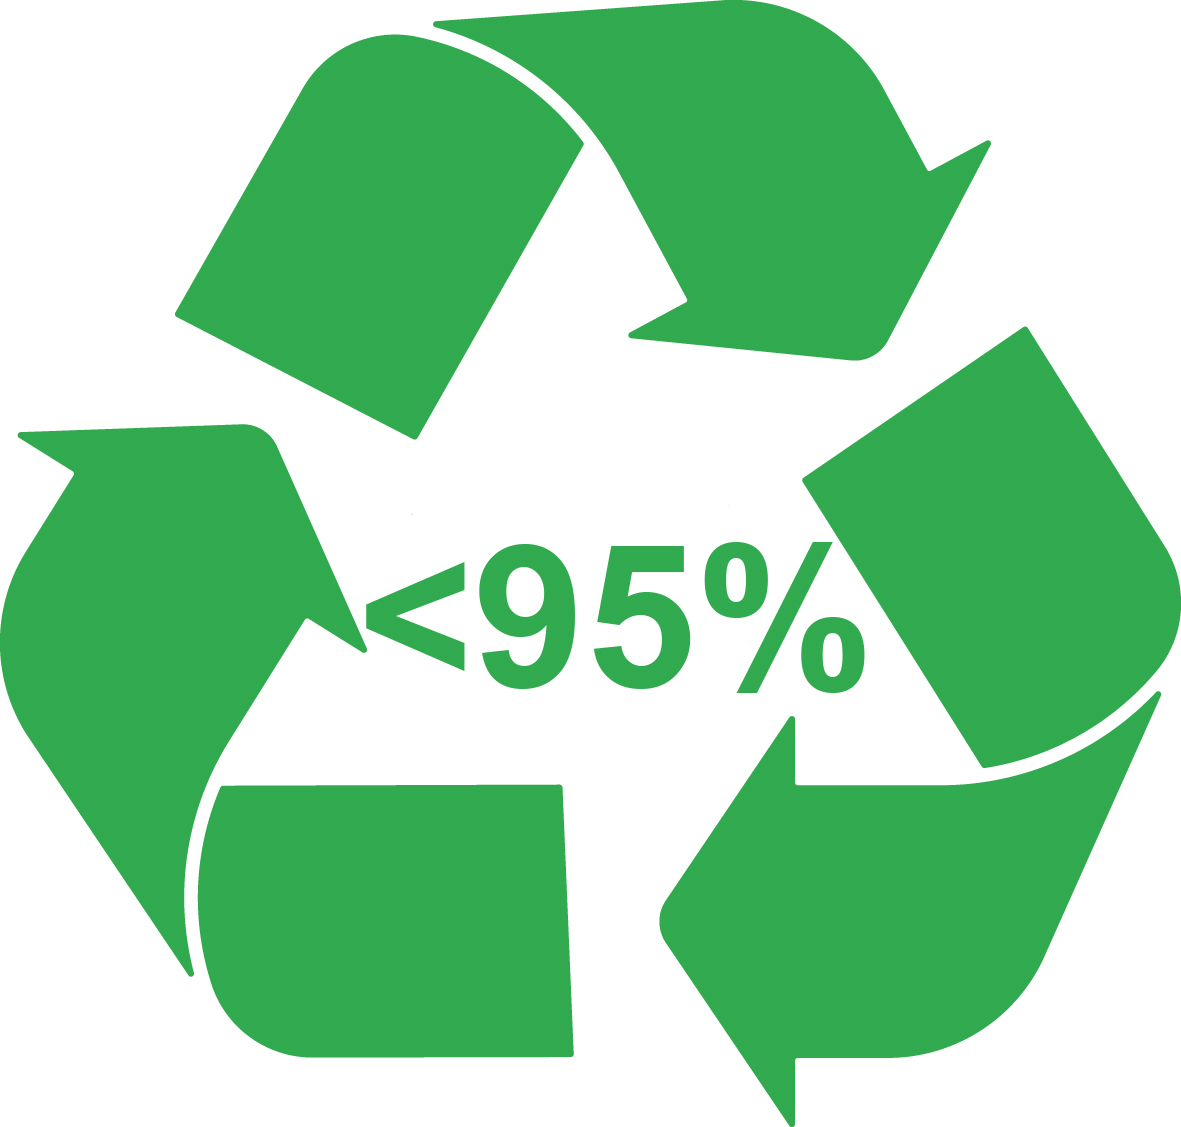 Bronmateriaal: Vervaardigd voor 75-95% uit gerecyclede materialen